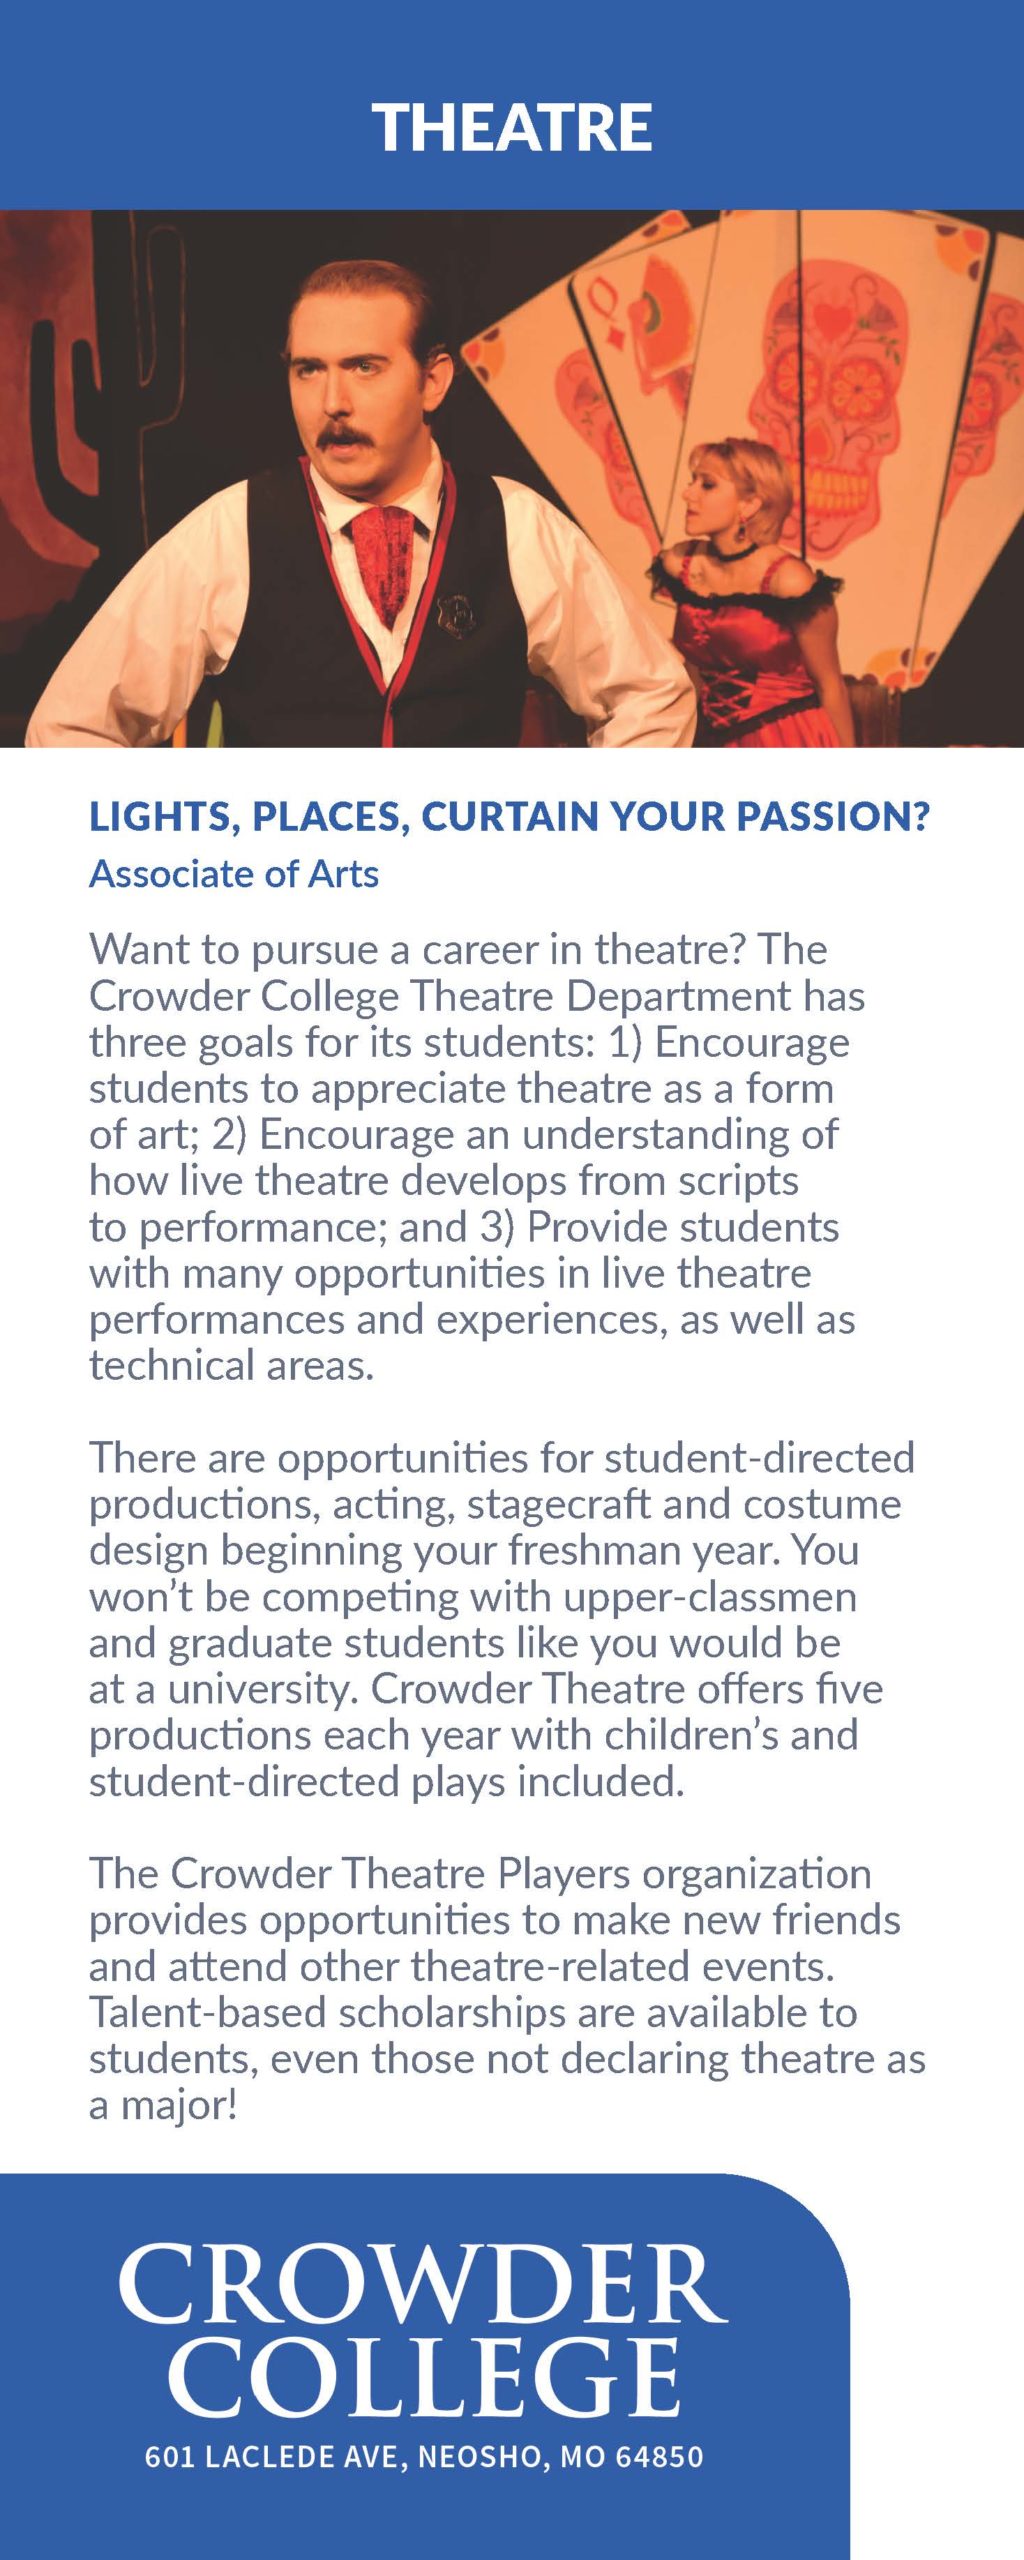 Theatre program information at Crowder College